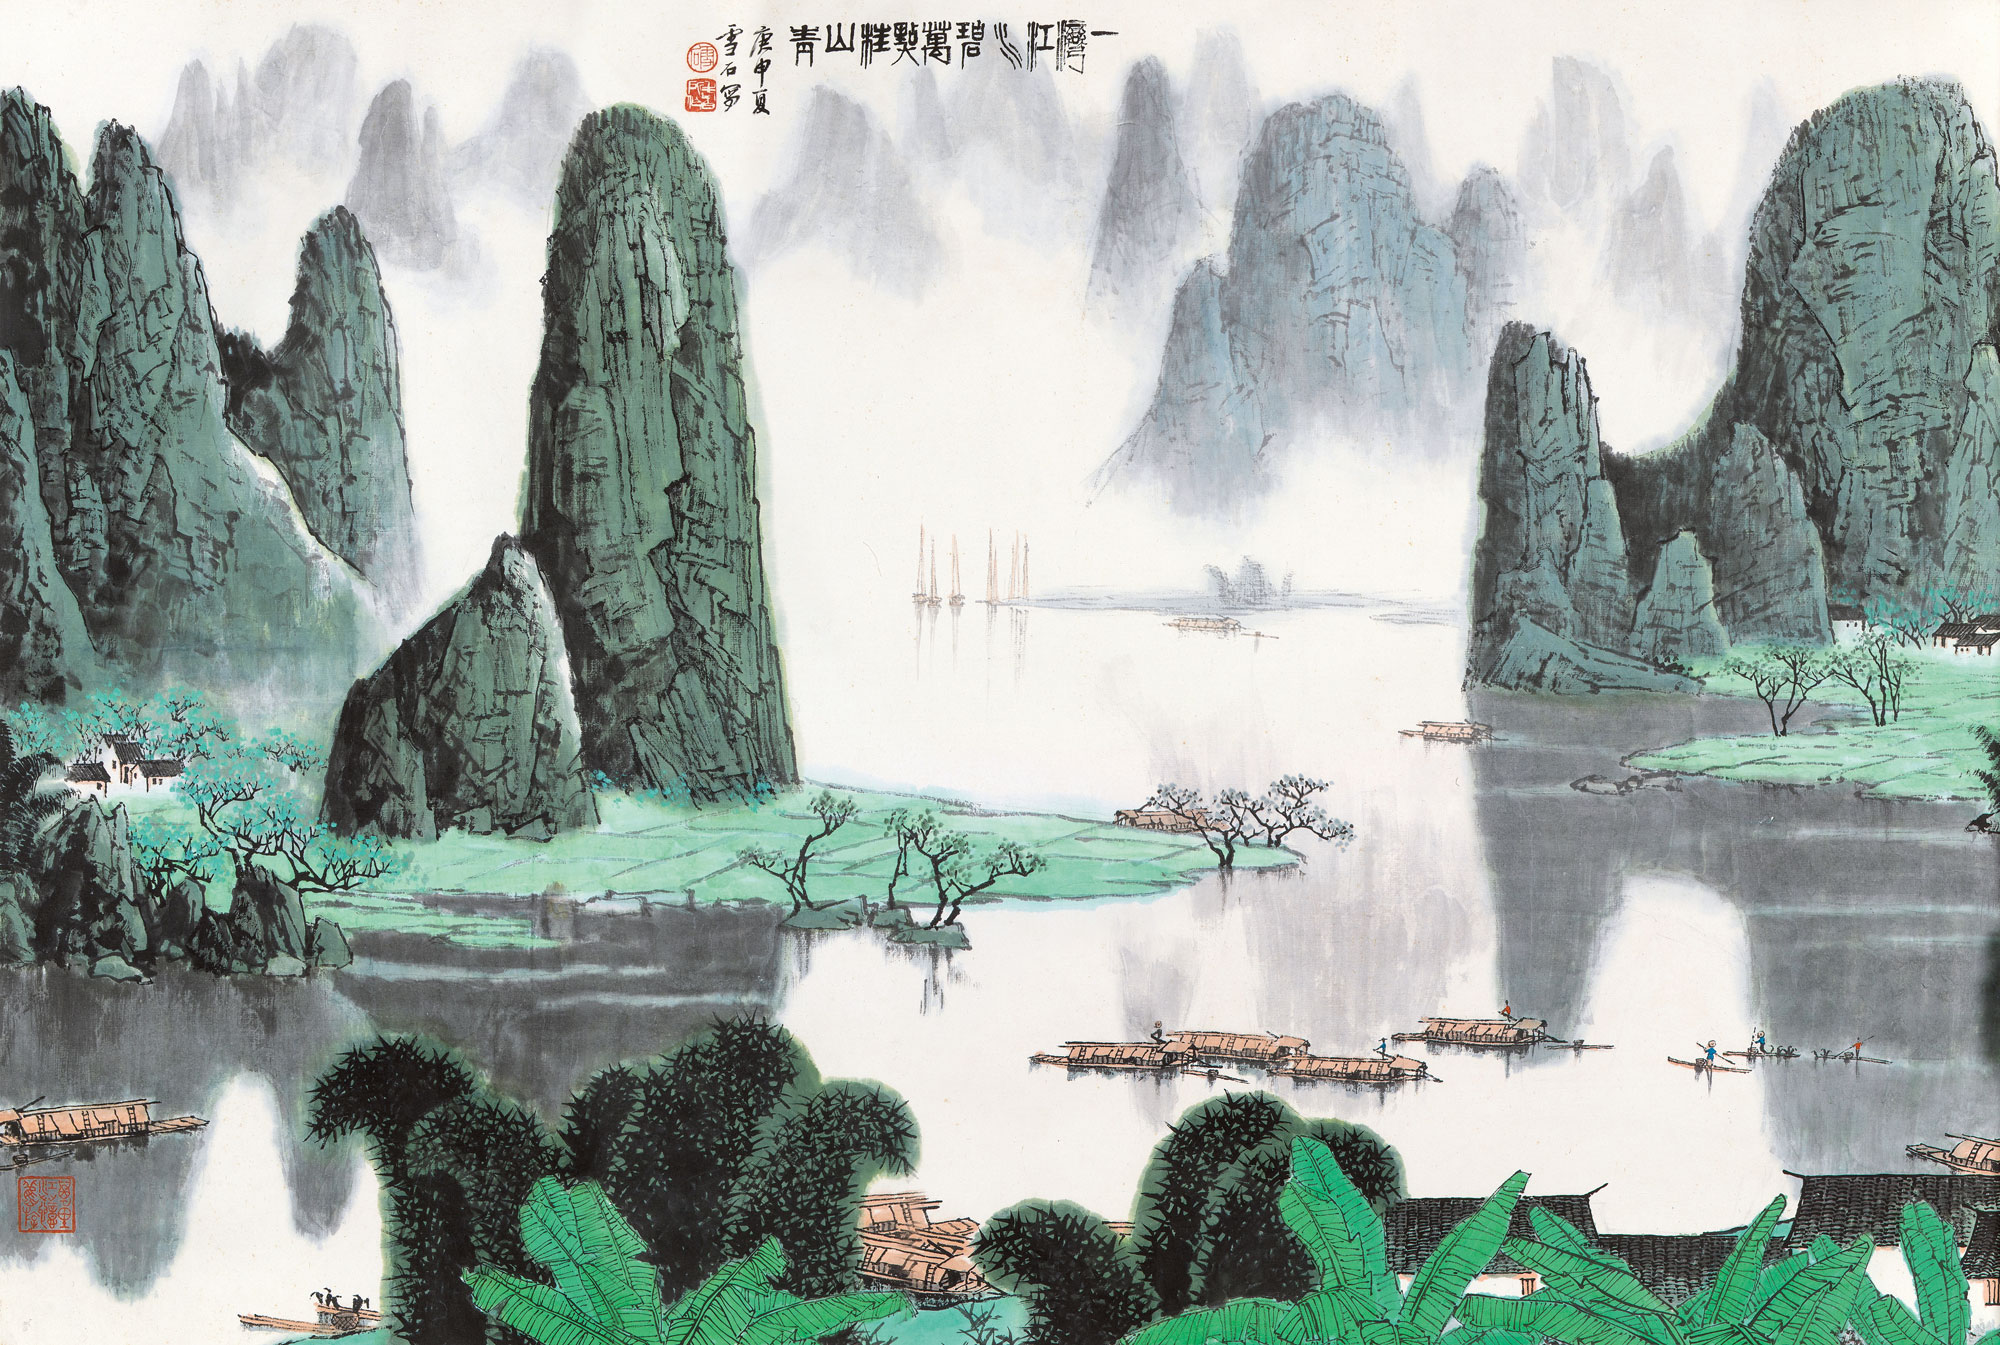 桂林山水甲天下 ,白家山水甲桂林 ,自家山水,即画家白雪石之独具风貌